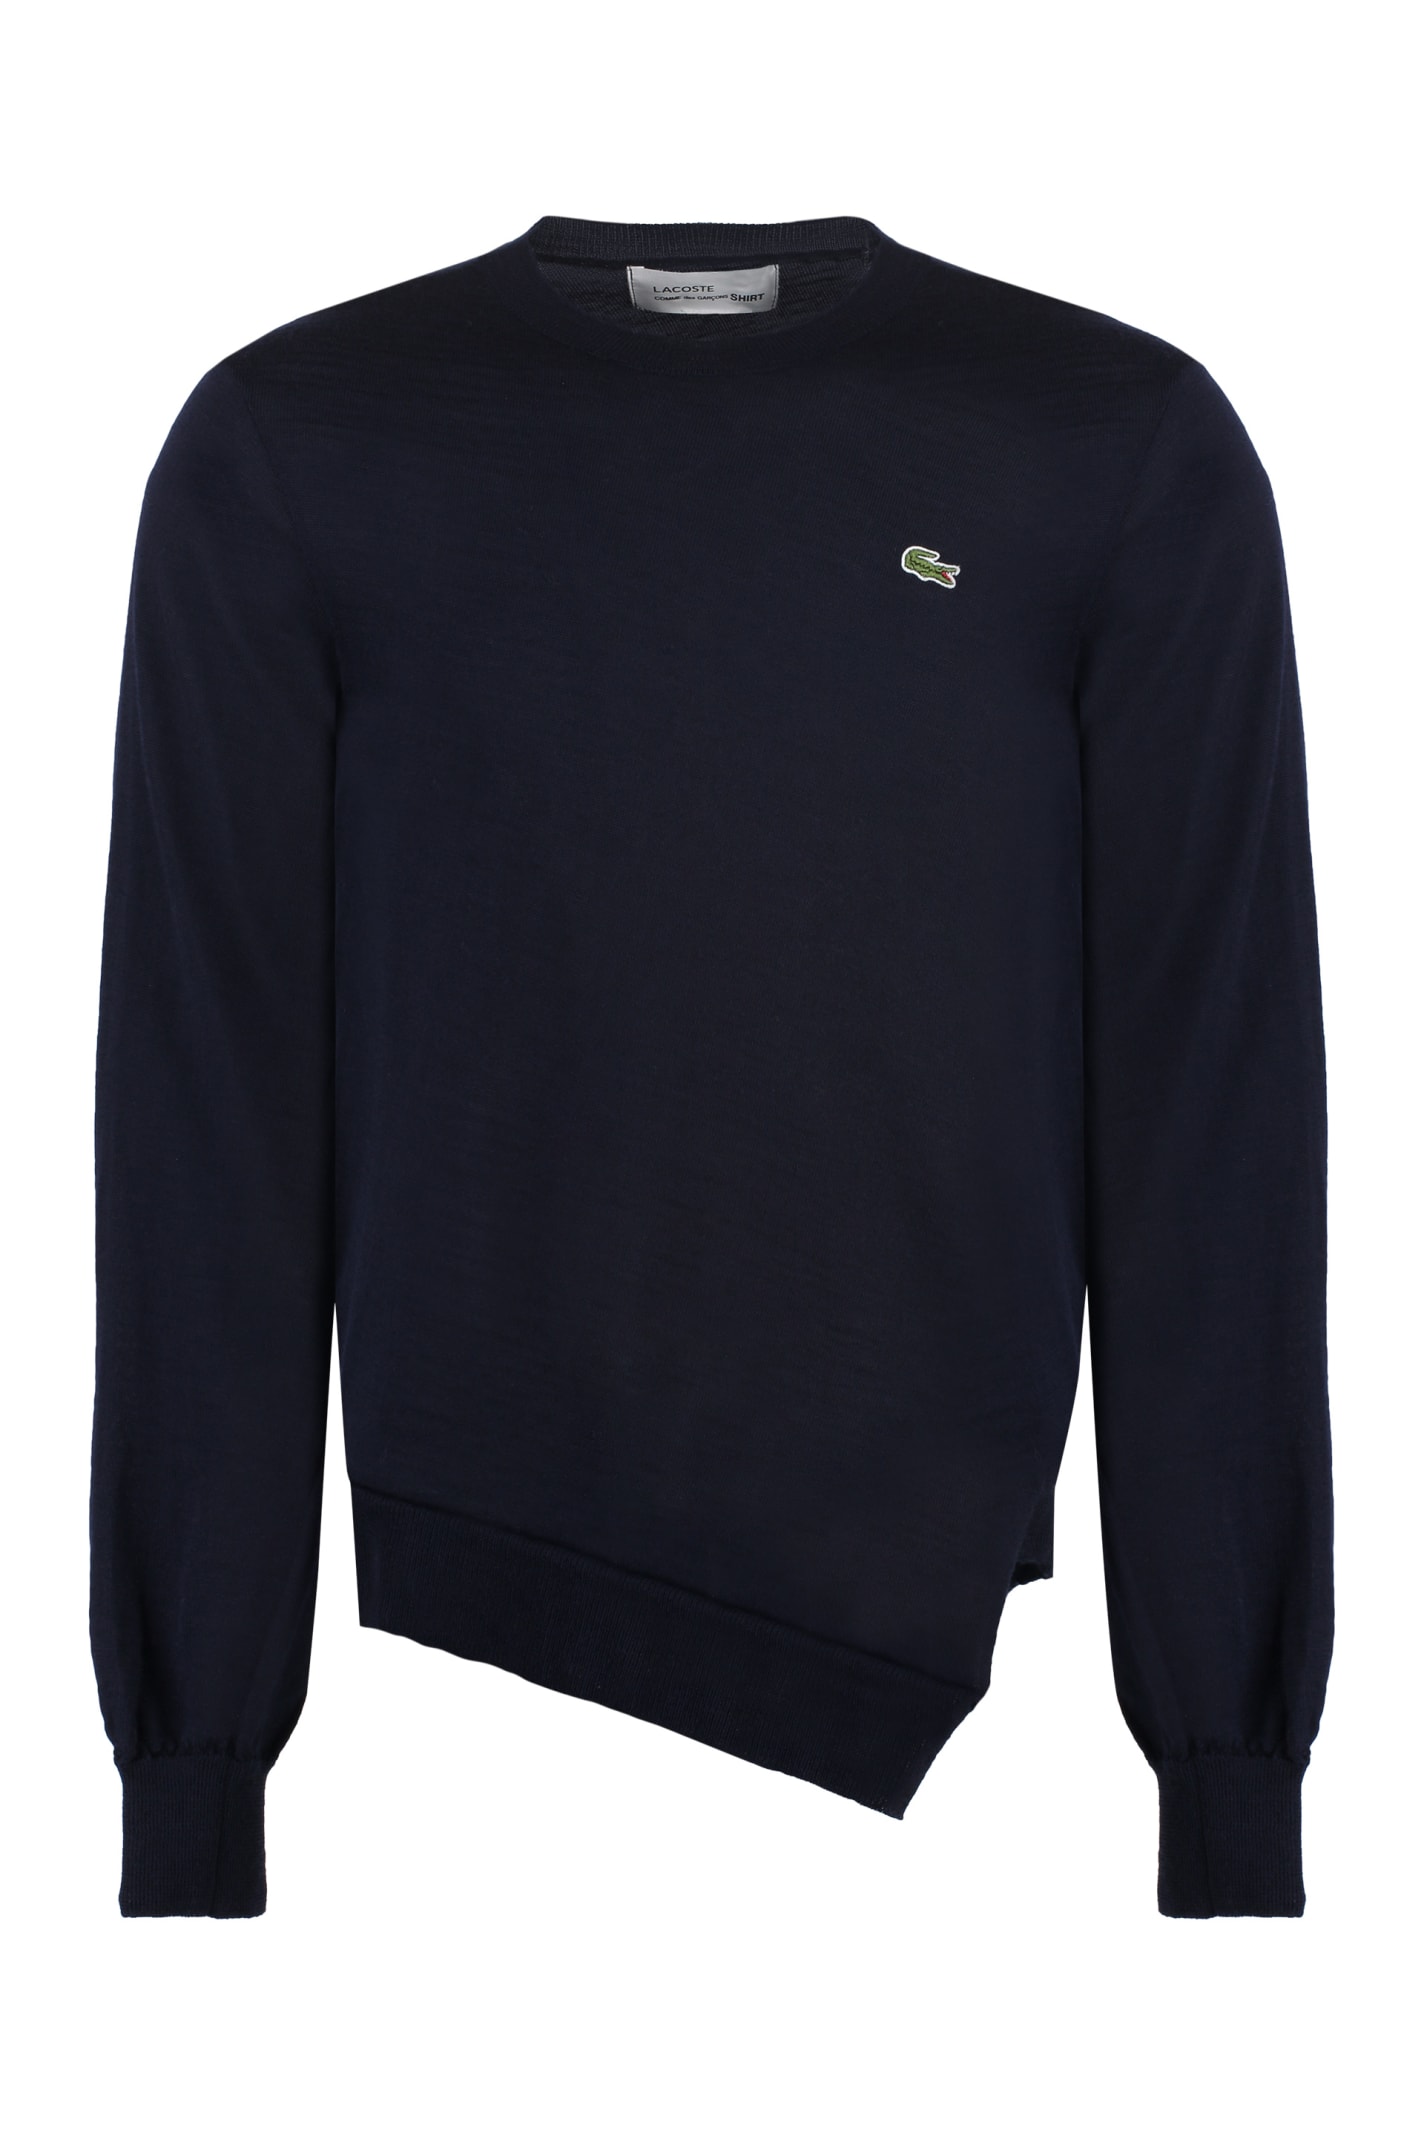 Comme Des Garçons Shirt Lacoste X Comme Des Garçons - Crew-neck Wool Sweater In Blue